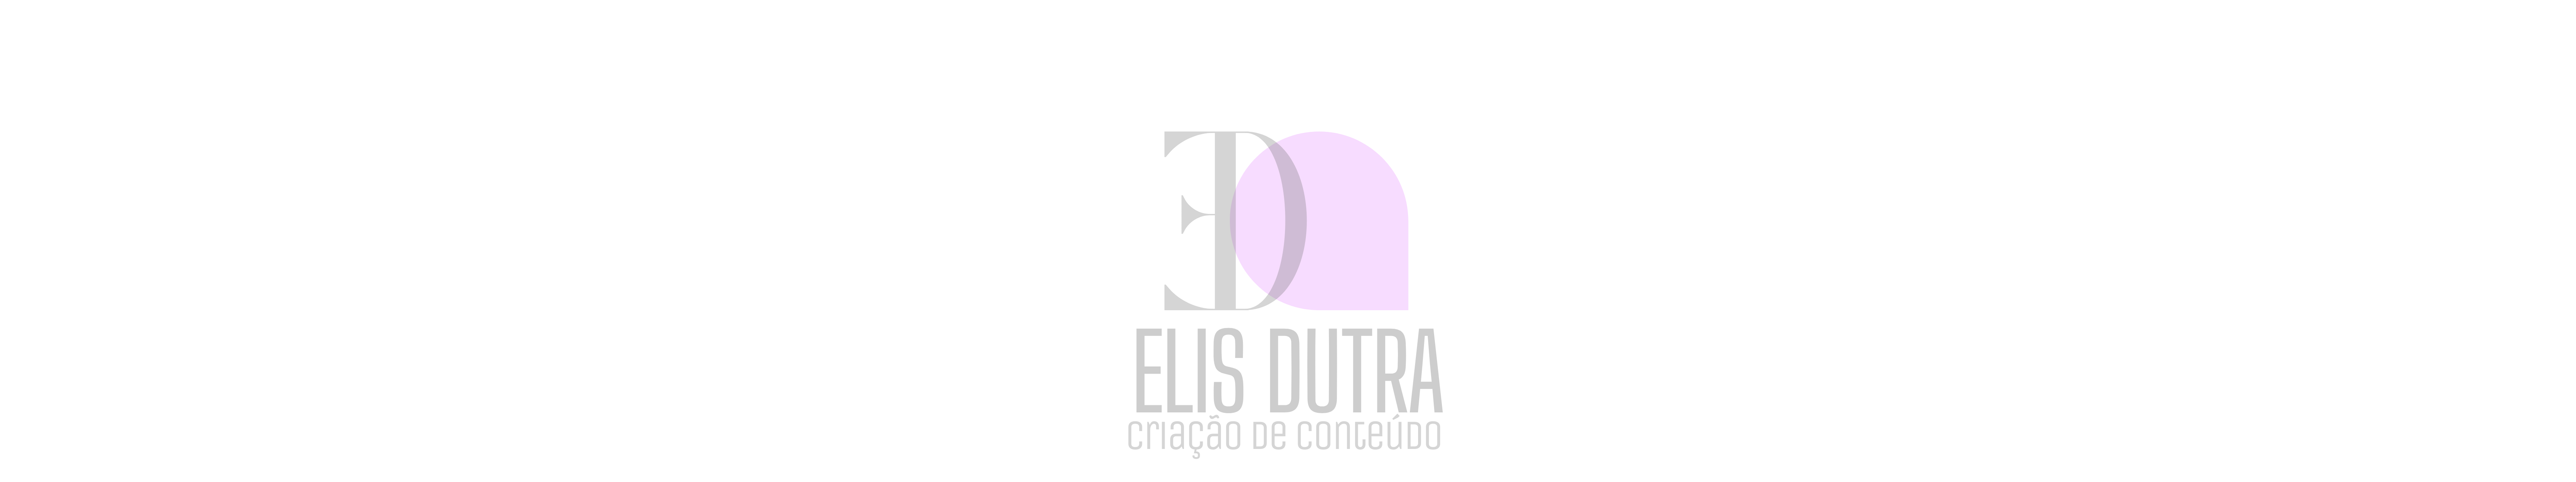 ELISÂNGELA DUTRA のプロファイルバナー